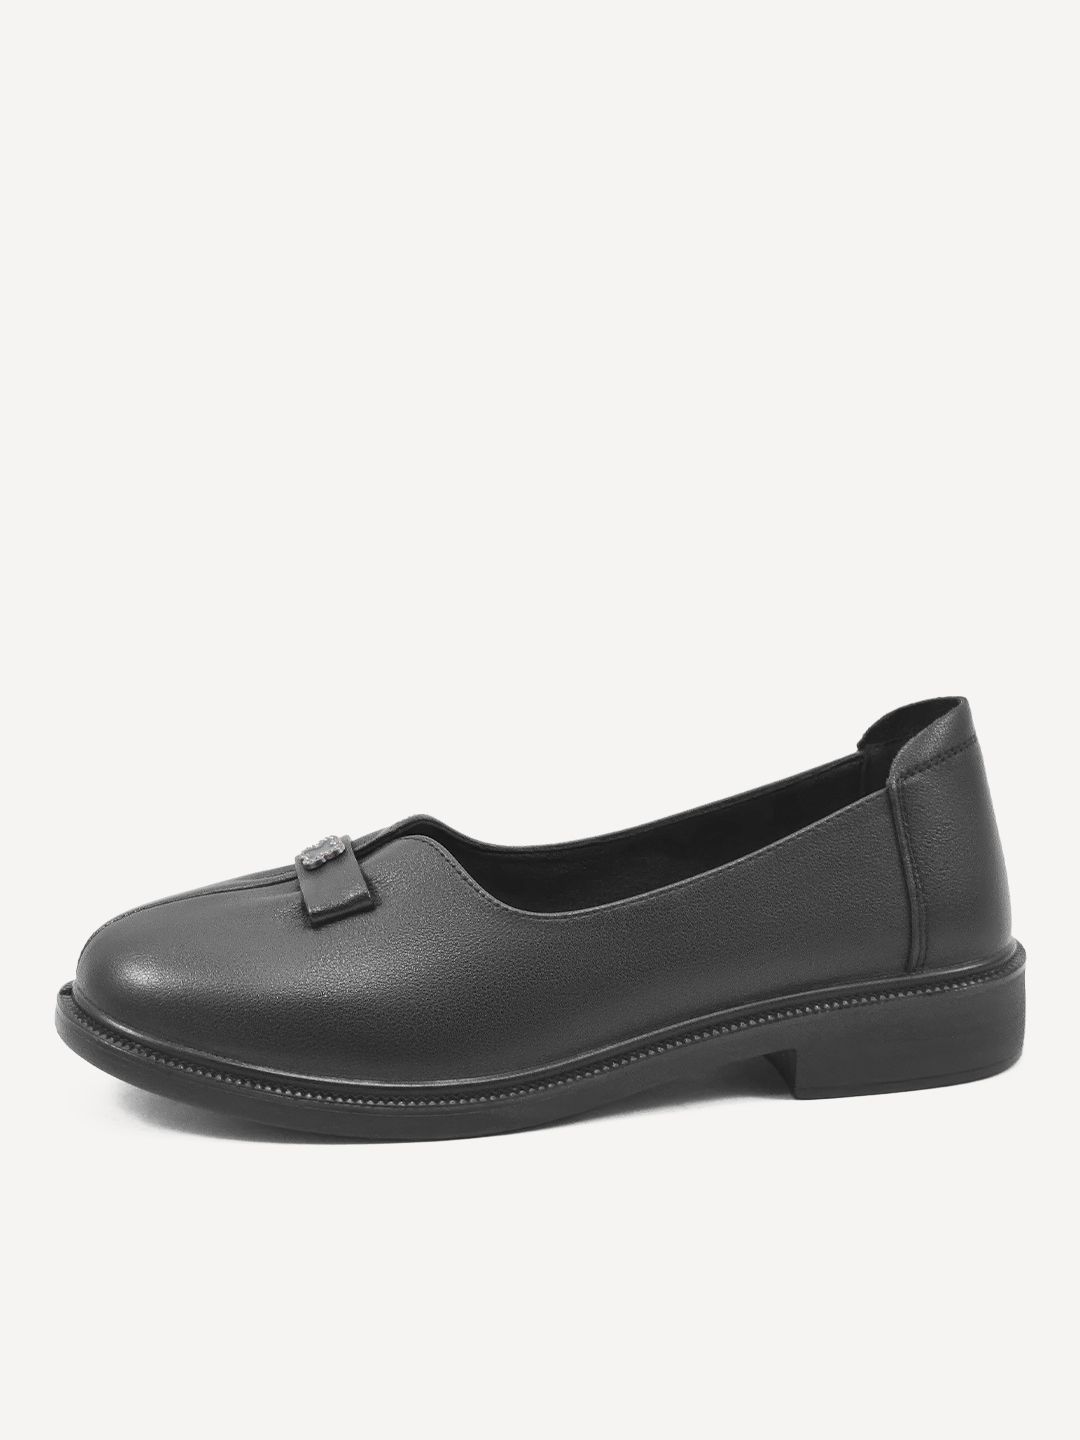 Туфли женские Baden ME304-020 черные 37 RU